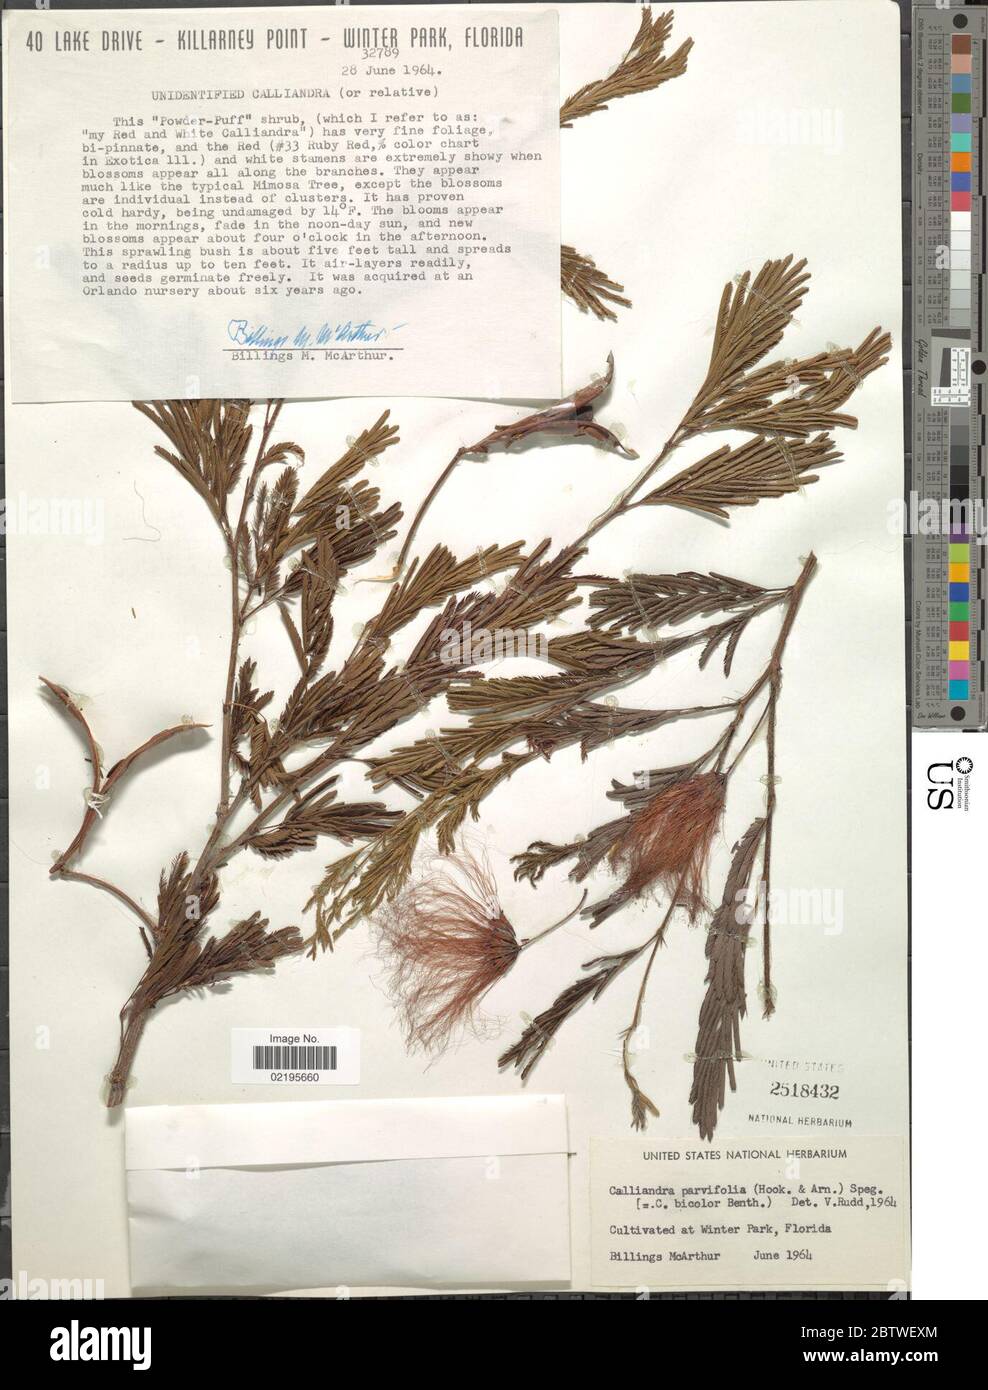 Calliandra parvifolia Hook Arn Speg. Stock Photo